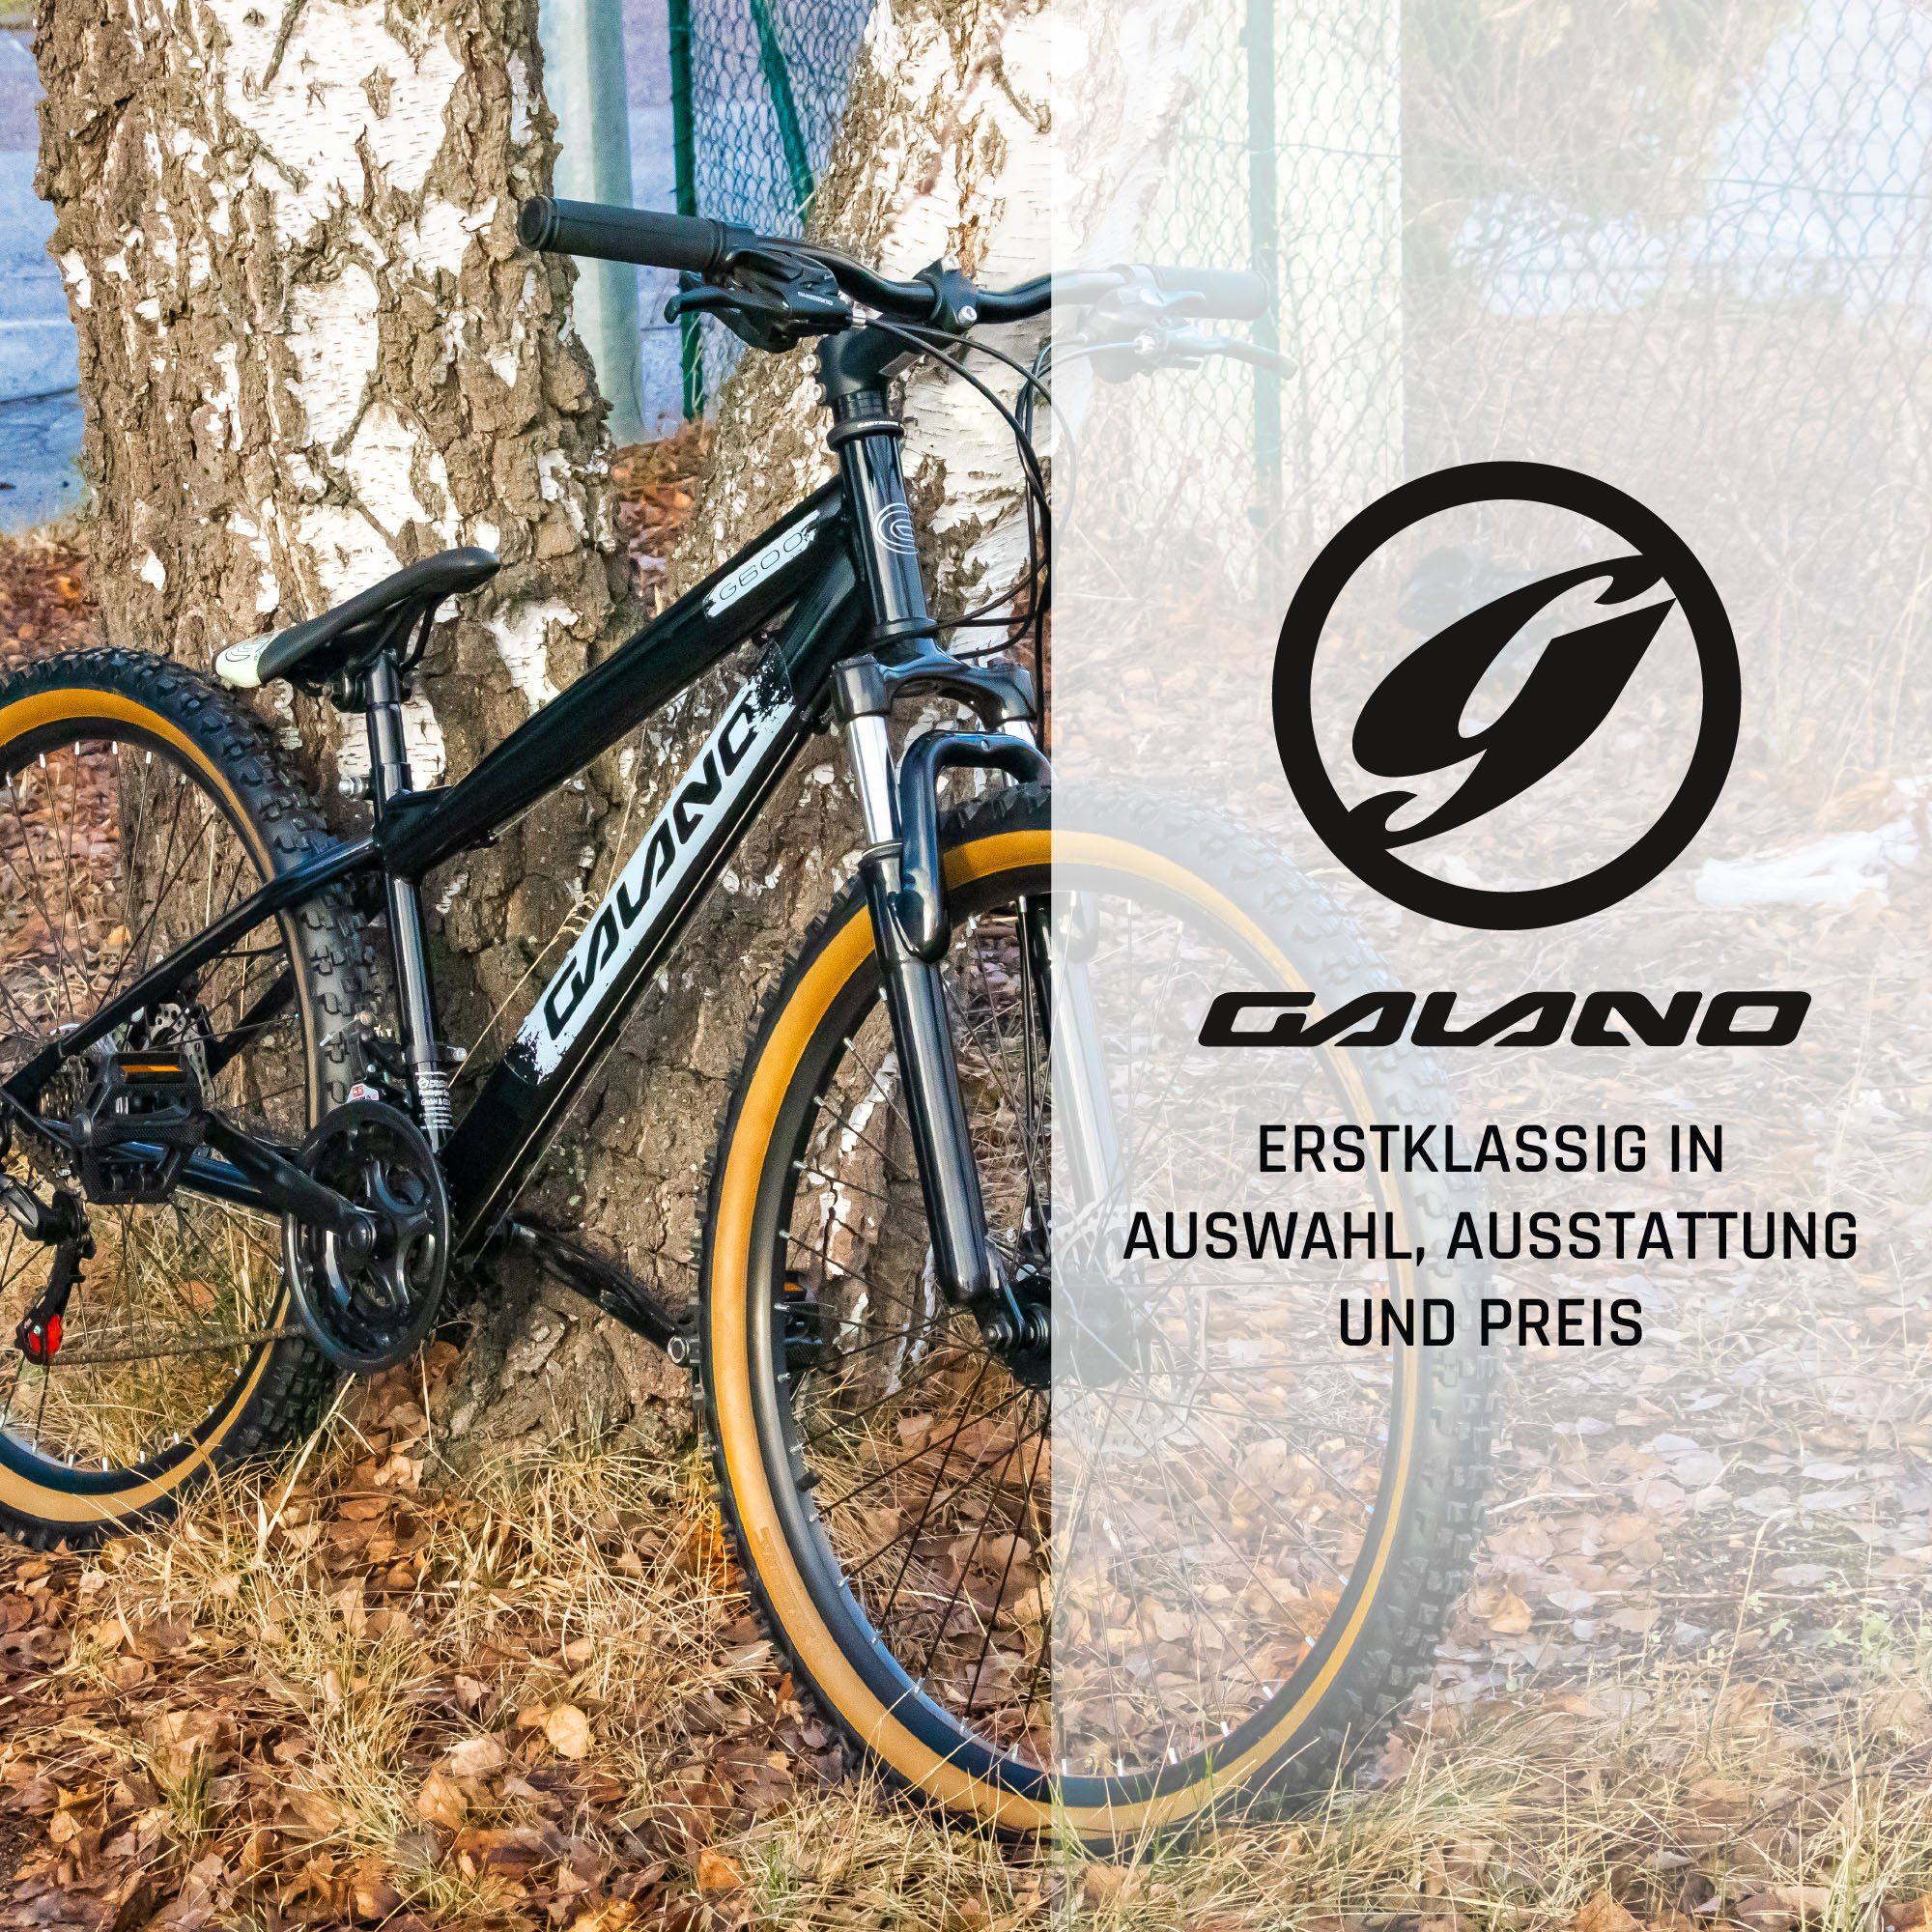 Galano Mountainbike G600, 18 Gang, Kettenschaltung, Dirtbike Fahrrad 26 Zoll für Jugendliche und Erwachsene 145 - 165 cm weiß/türkis